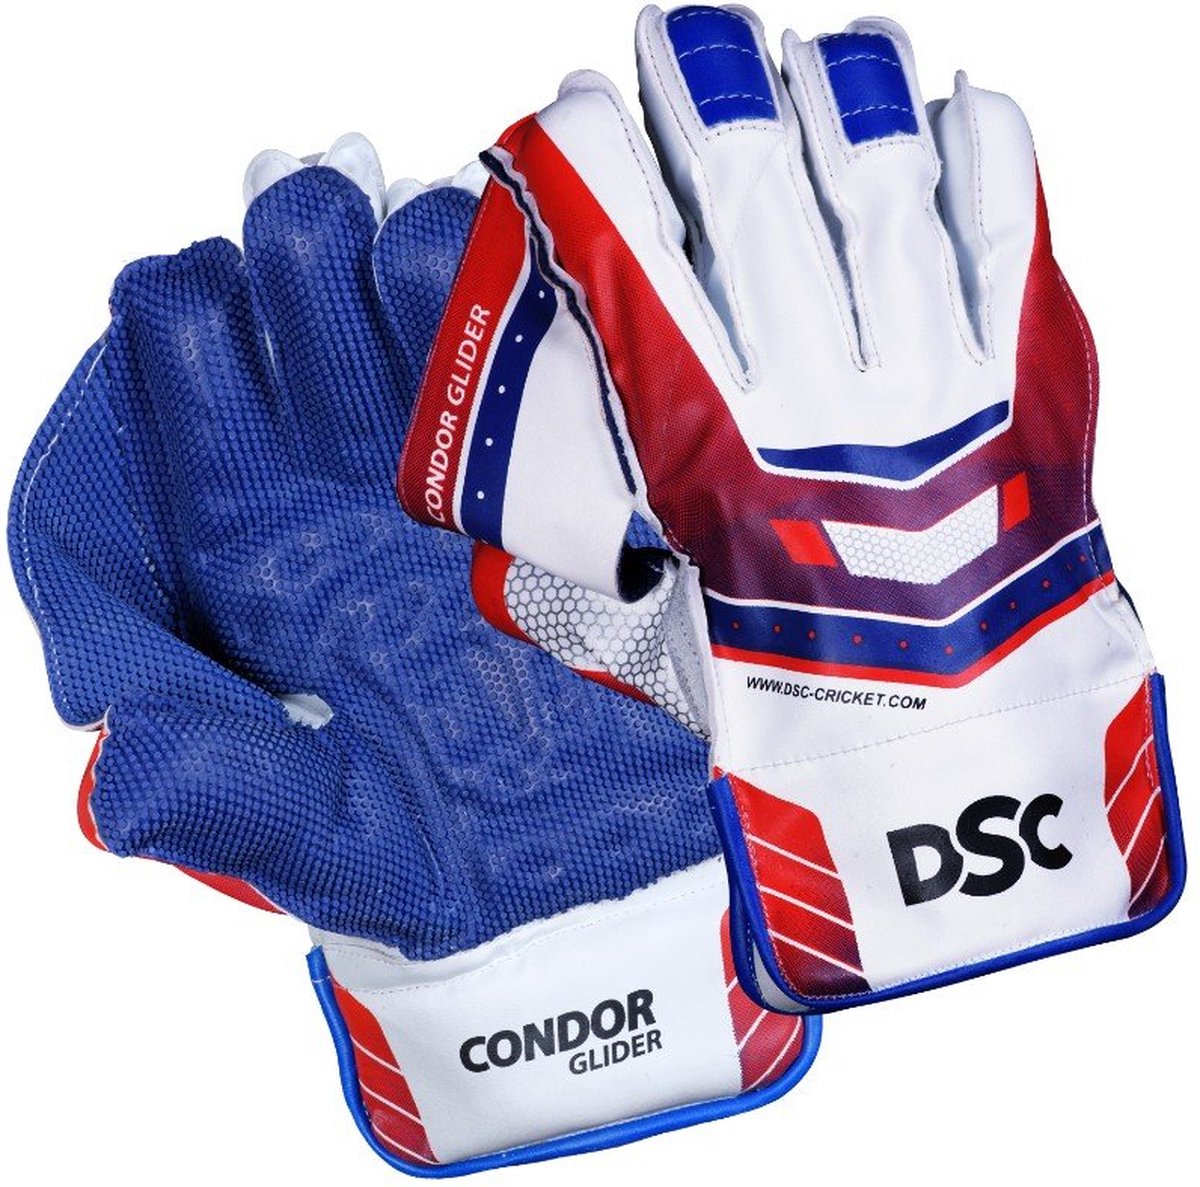 DSC Condor Glider Wicket houdt handschoenen - jongens (multicolour)